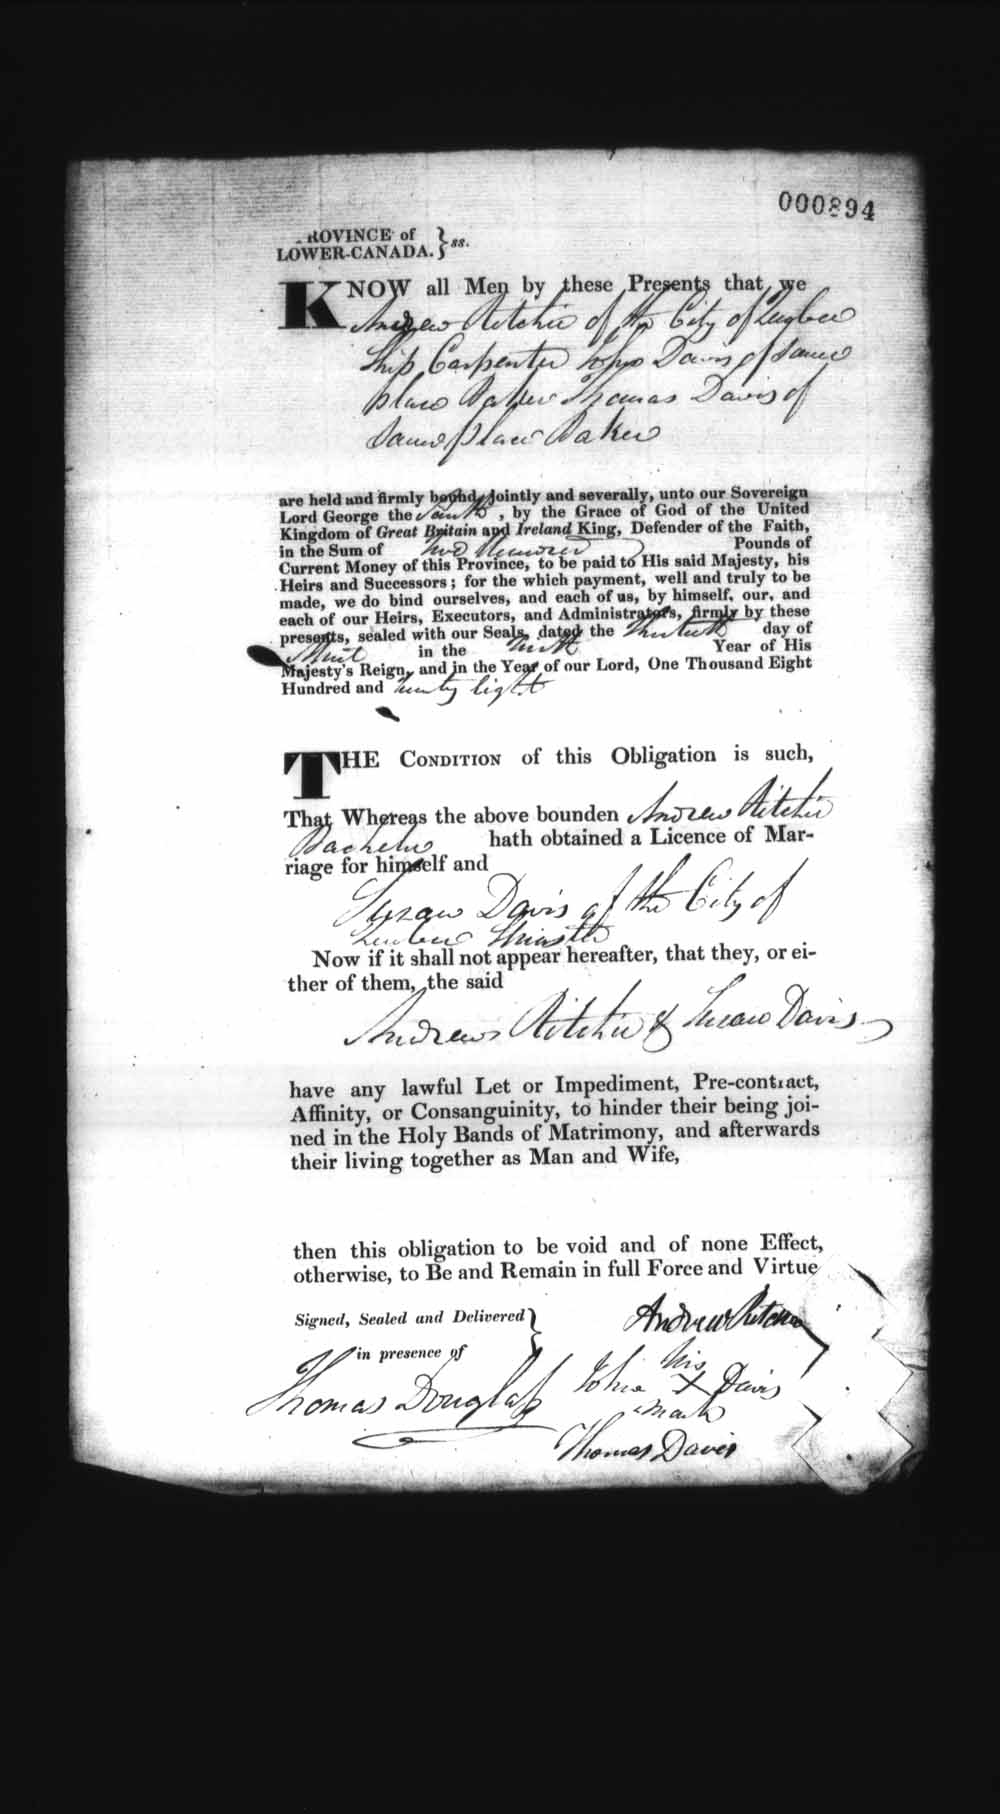 Page numérisé de Cautionnements de mariages pour le Haut-Canada et le Bas-Canada (1779-1865) pour l'image numéro: e008236987